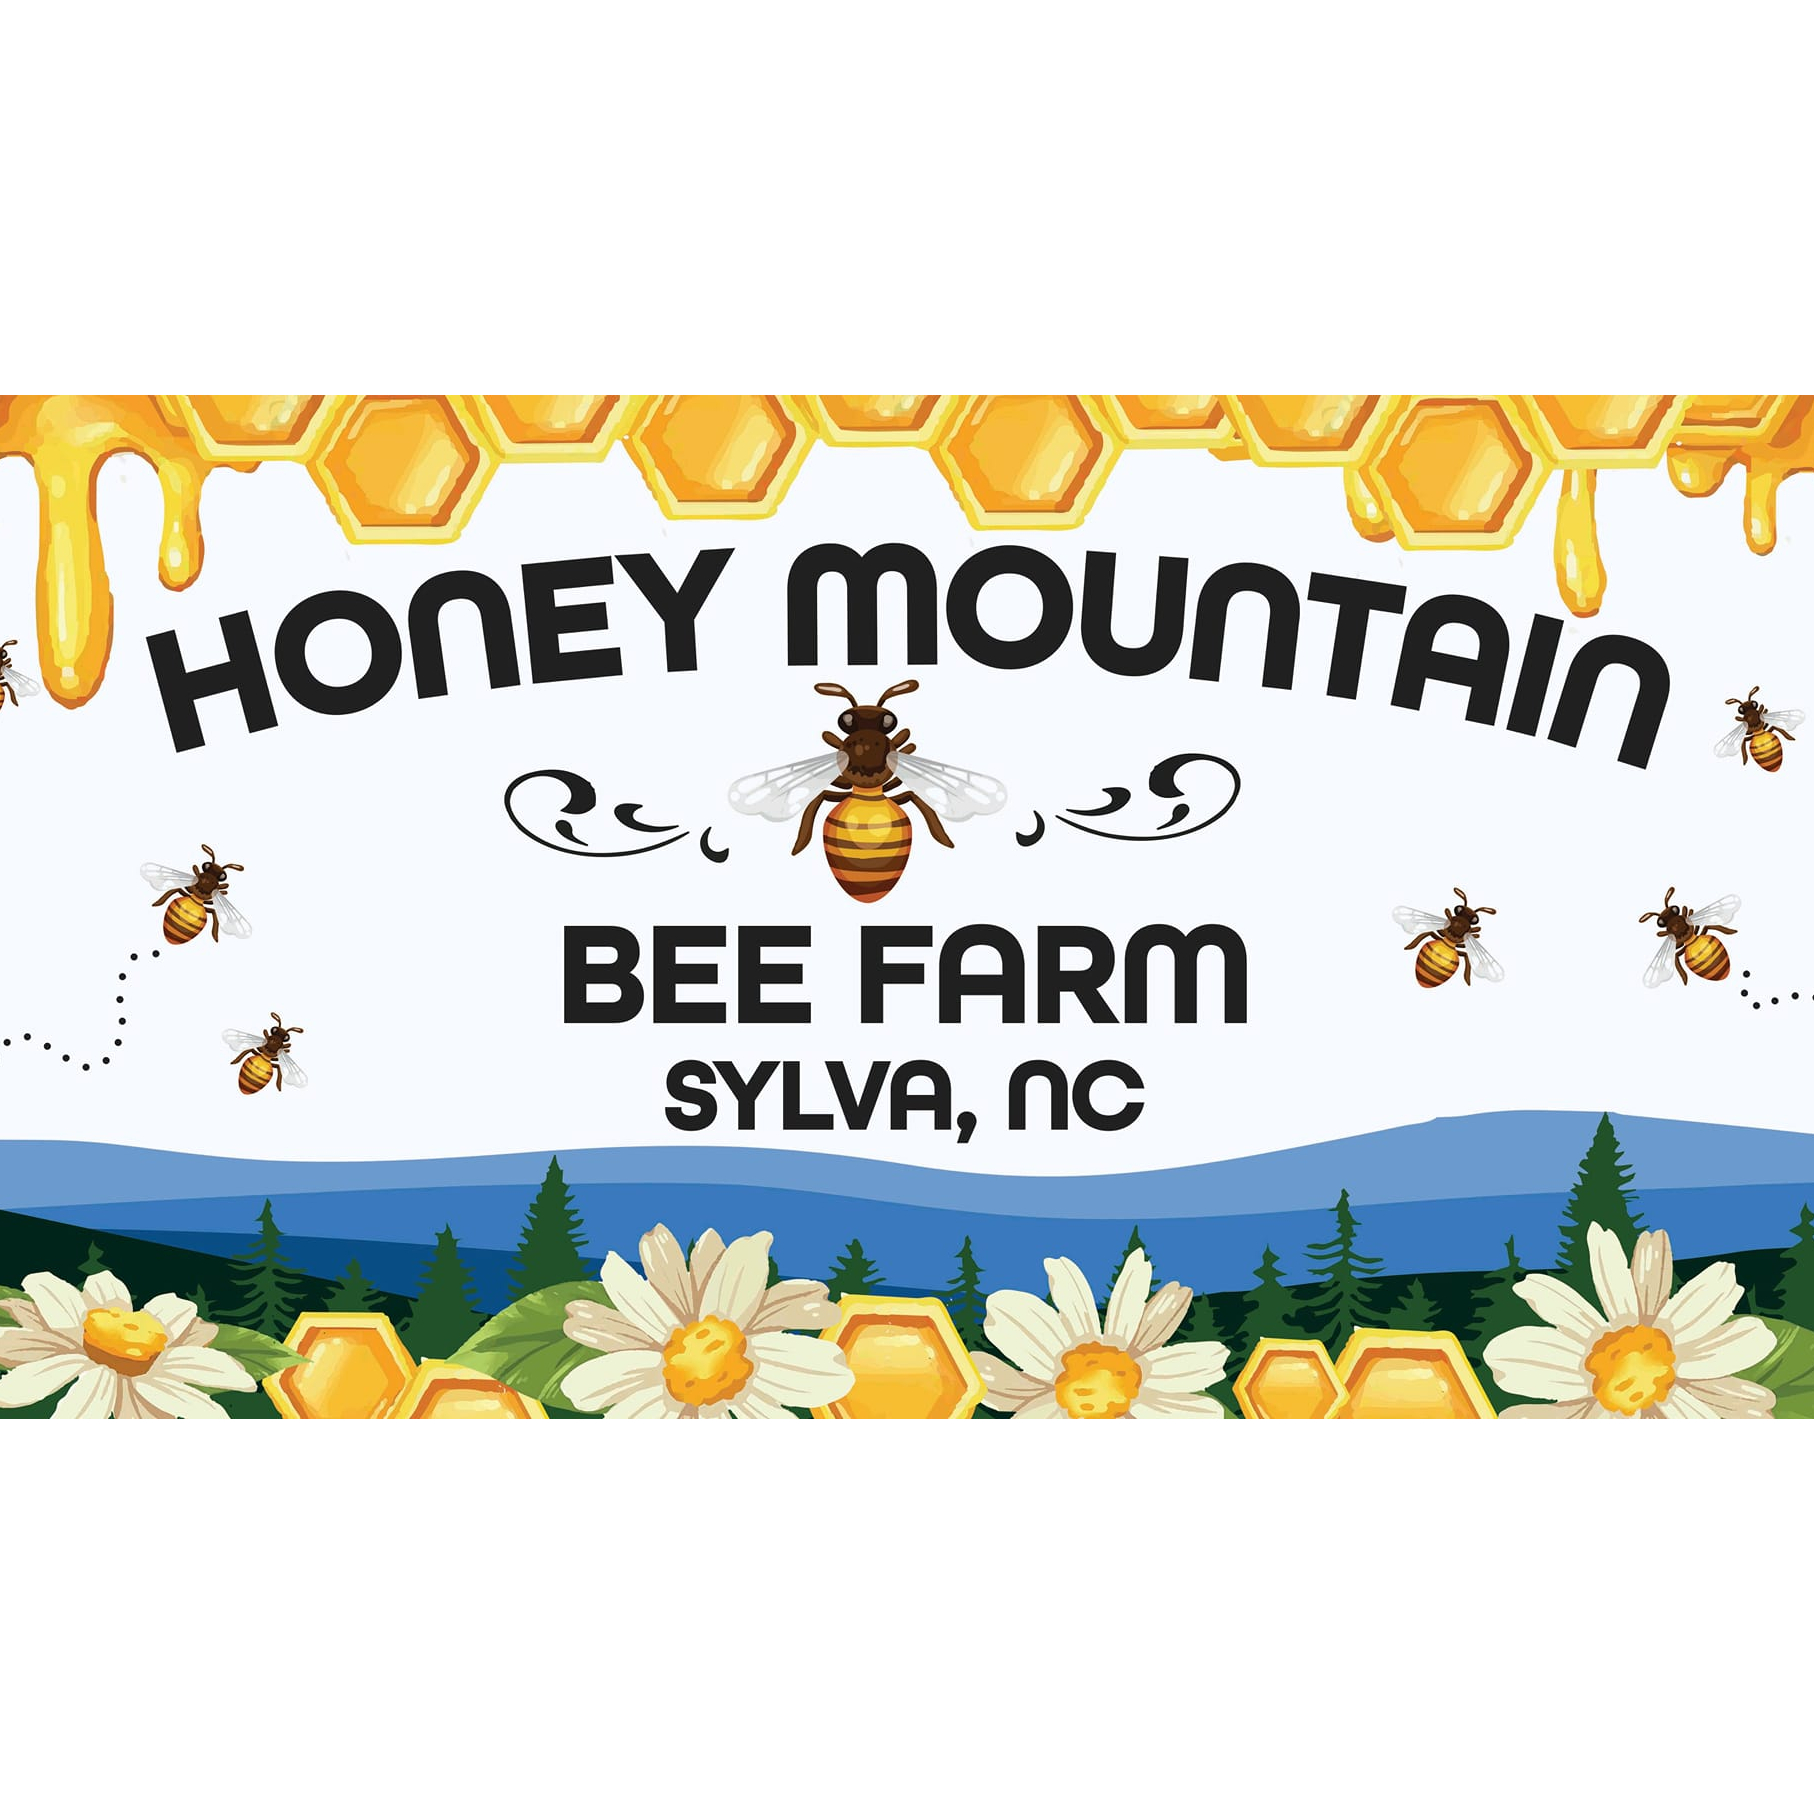 Honey Mountain Bee Farm